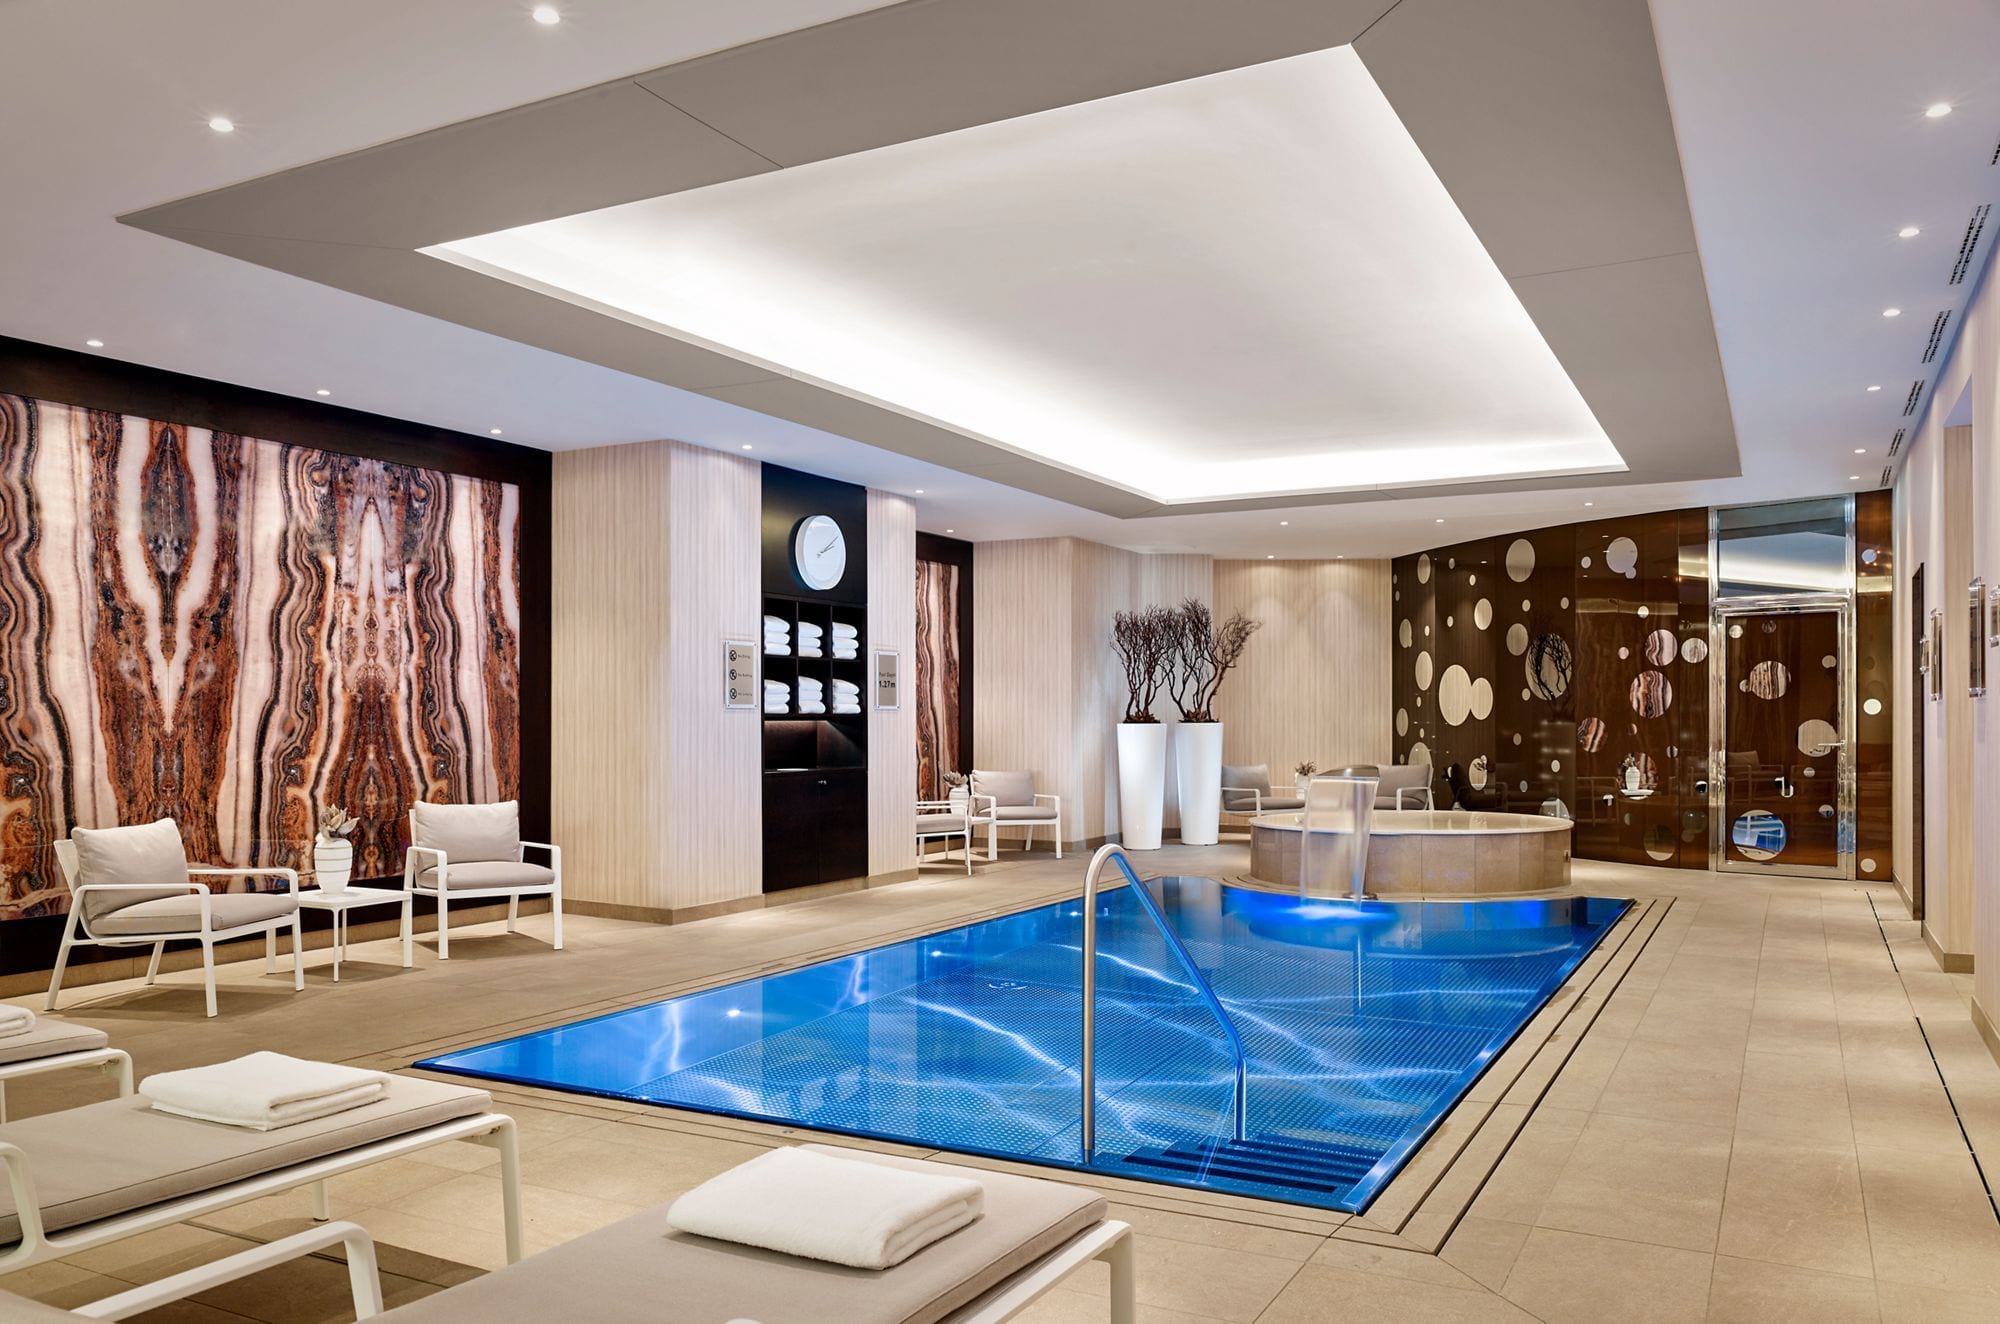 Prelivný nerezový bazén IMAGINOX v hoteli Ritz Carlton v Berlíne